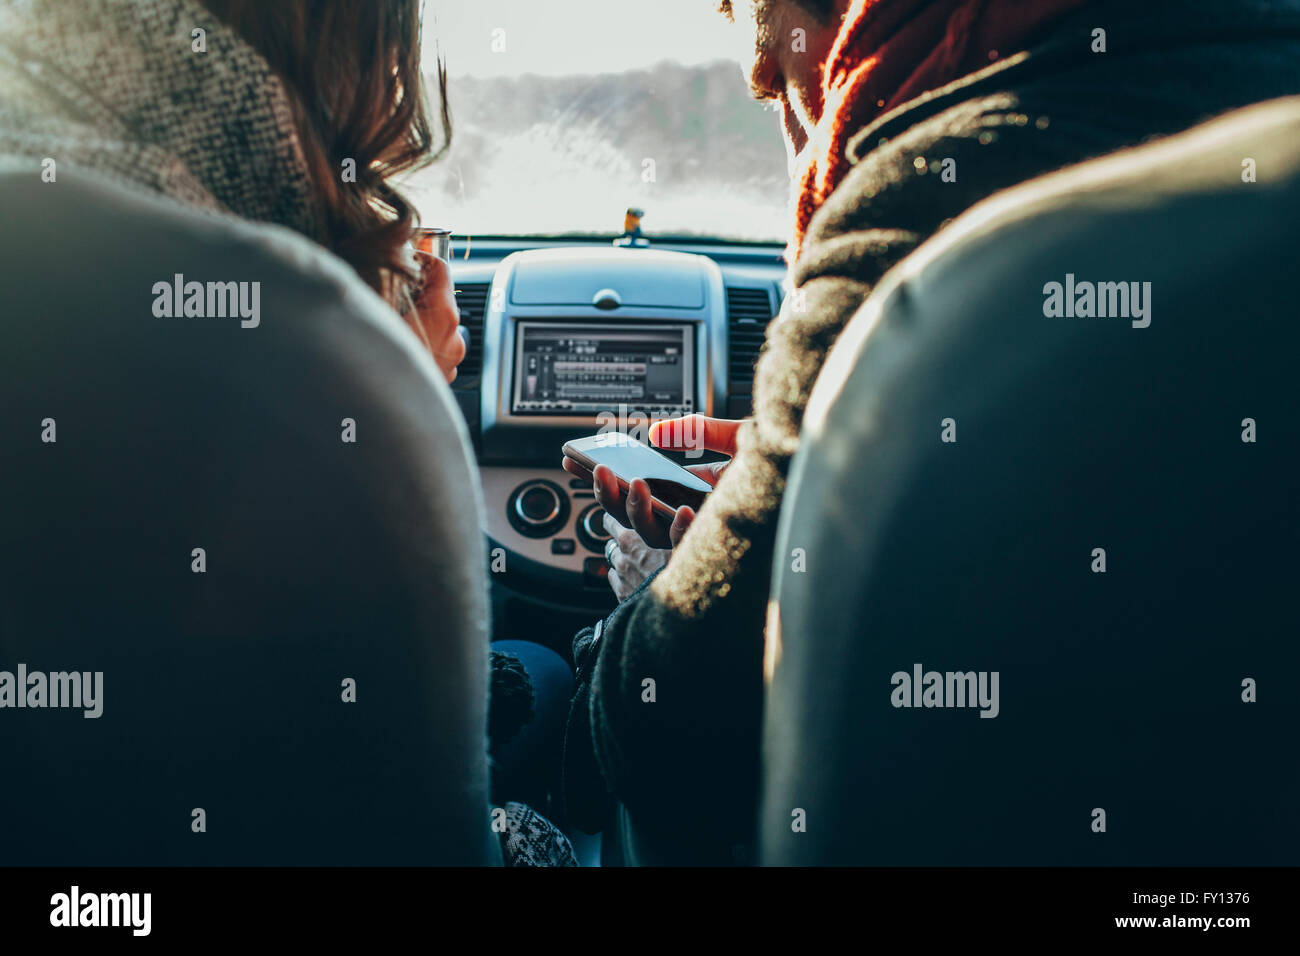 Bild des Paares mit Smartphone im Auto beschnitten Stockfoto